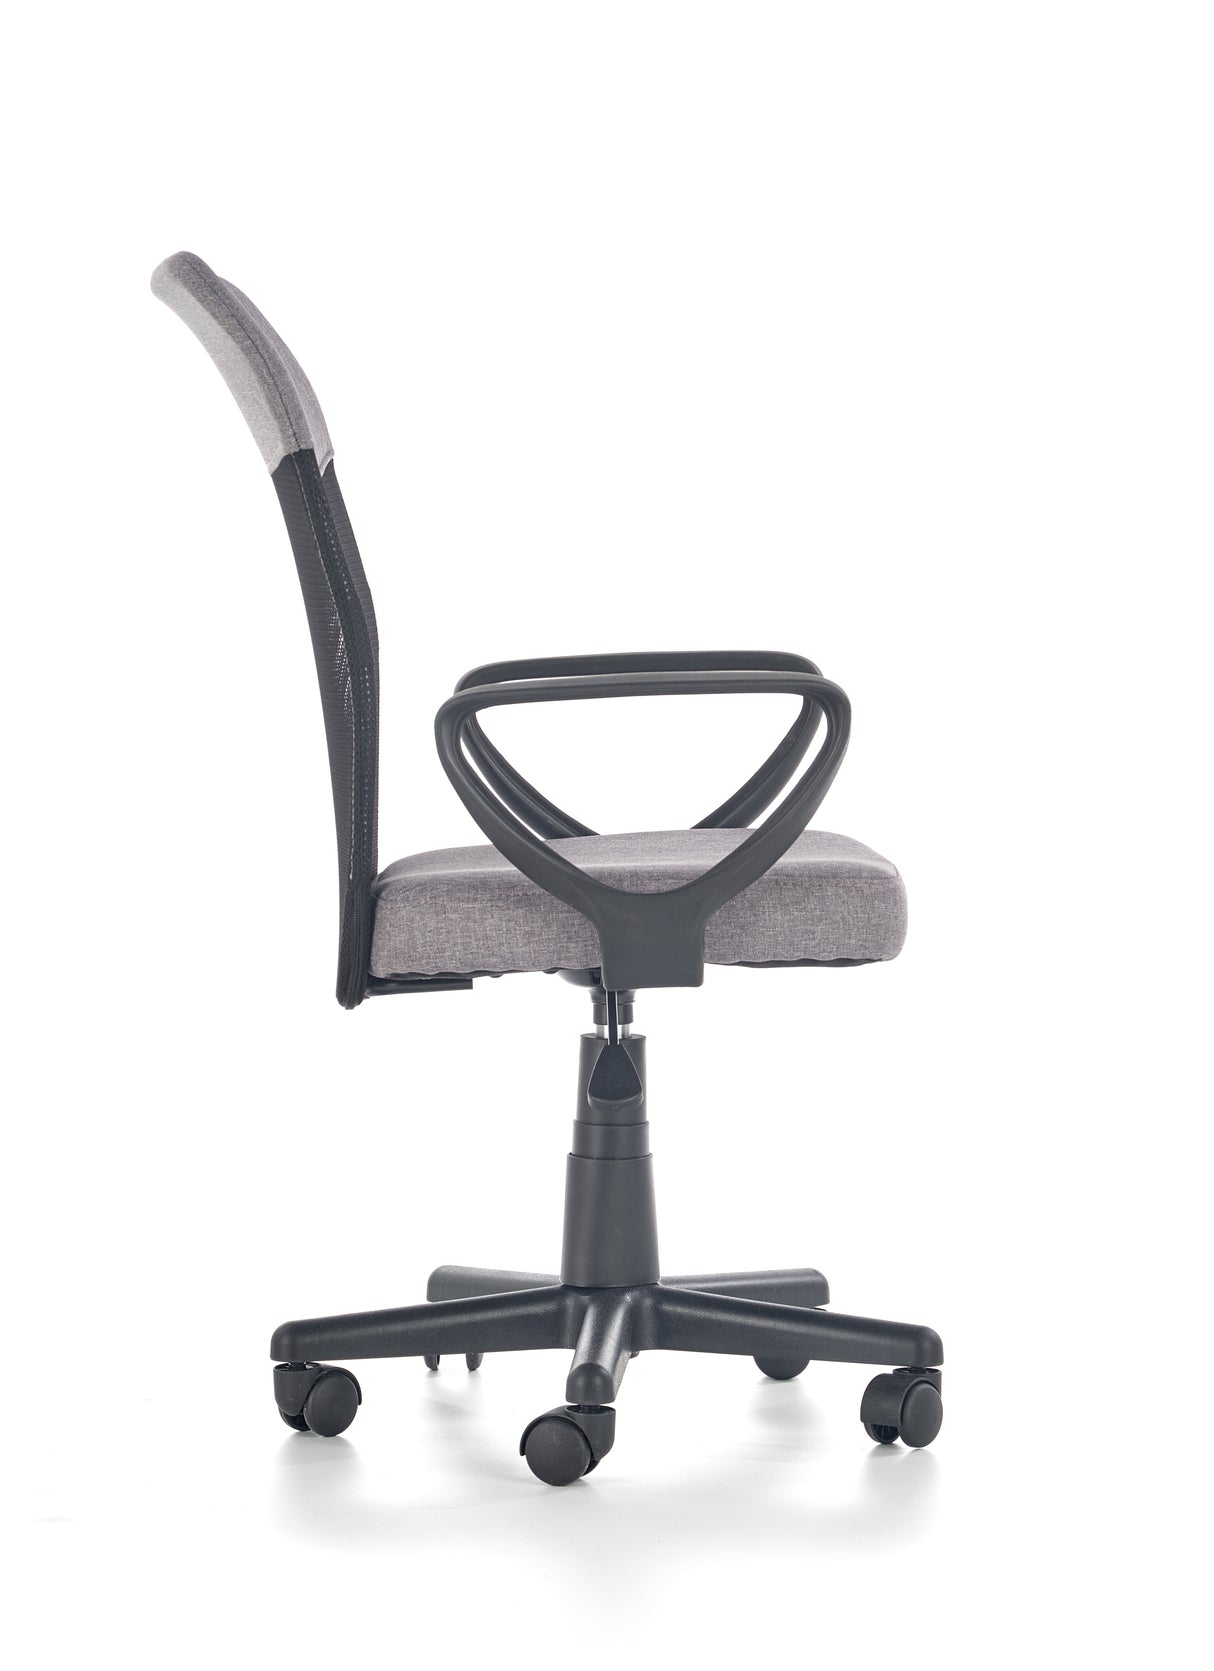 Office Chair HA1696